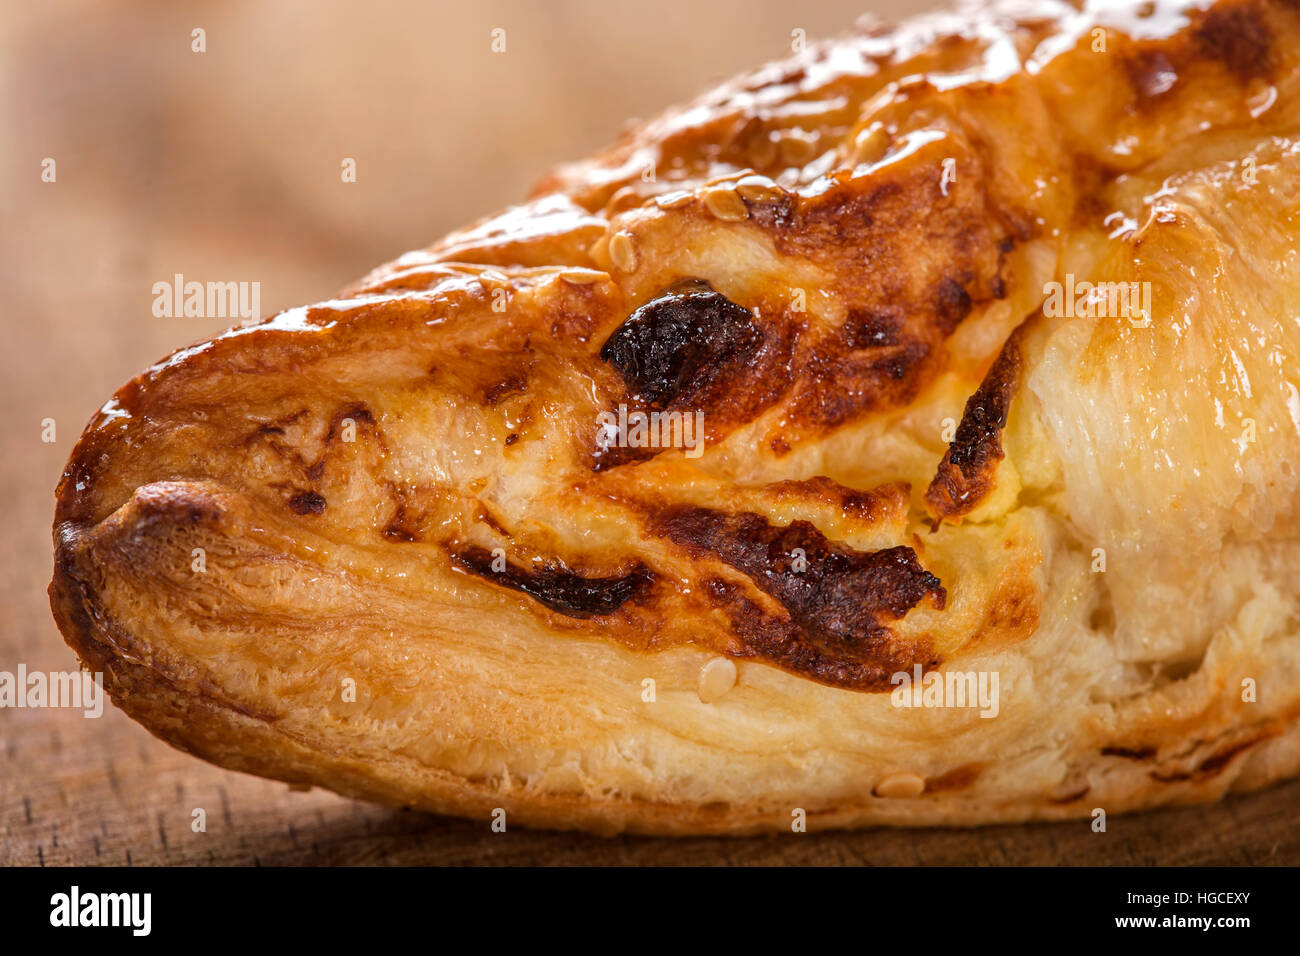 Nahaufnahme von einem Stück Käse Patty verschmiert mit Honig und Sesam Samen auf hölzernen Hintergrund Stockfoto